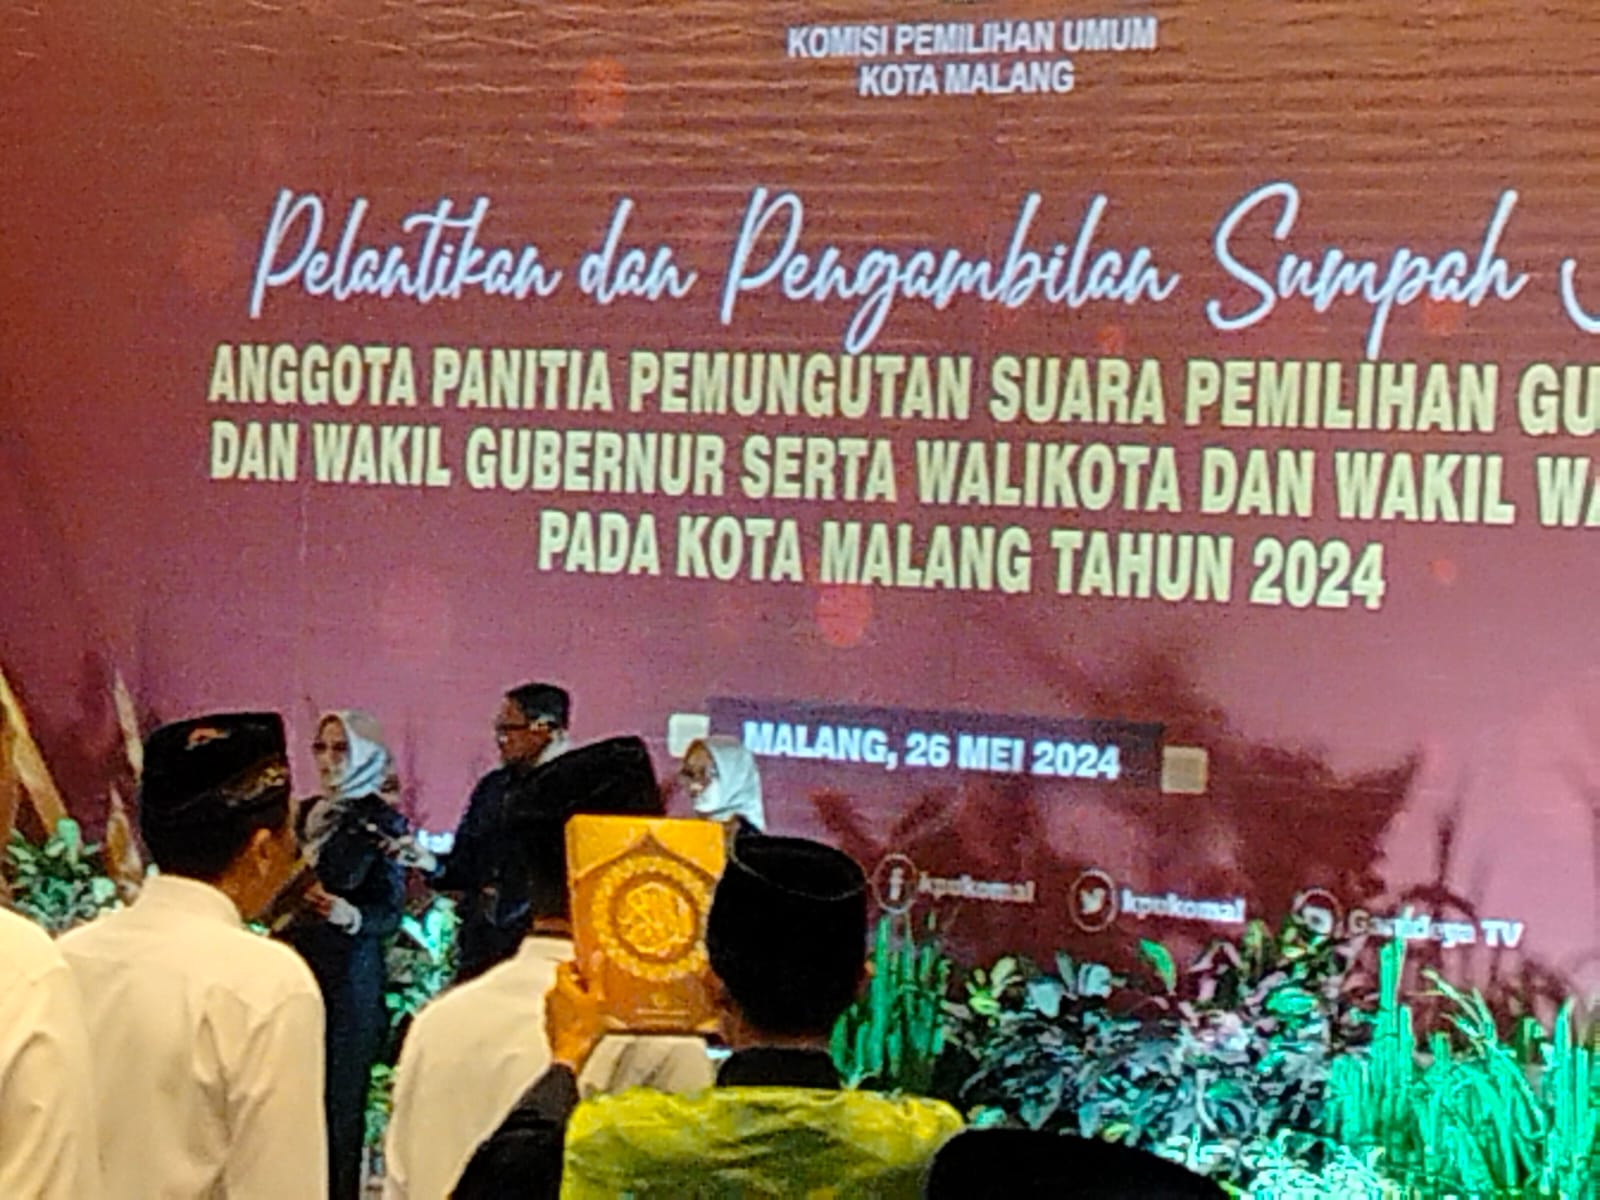 Dilantik KPU Kota Malang, Harapkan PPS Miliki Integritas